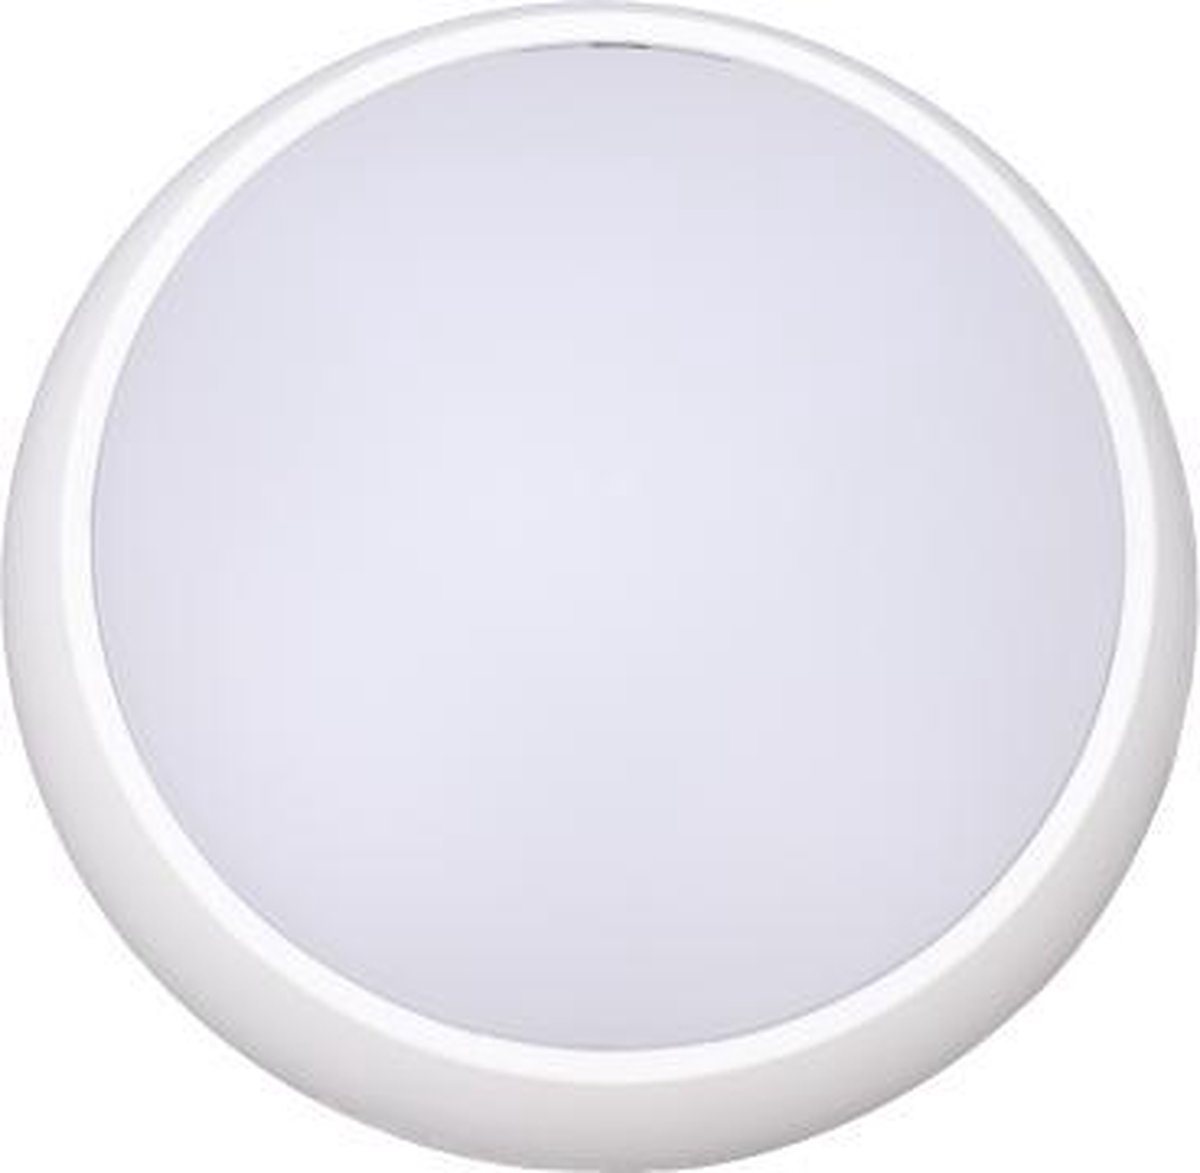 Prilux “Masne” Wandlamp LED | 8W - 586lm - 3000K | voor binnen en buiten | kleur wit